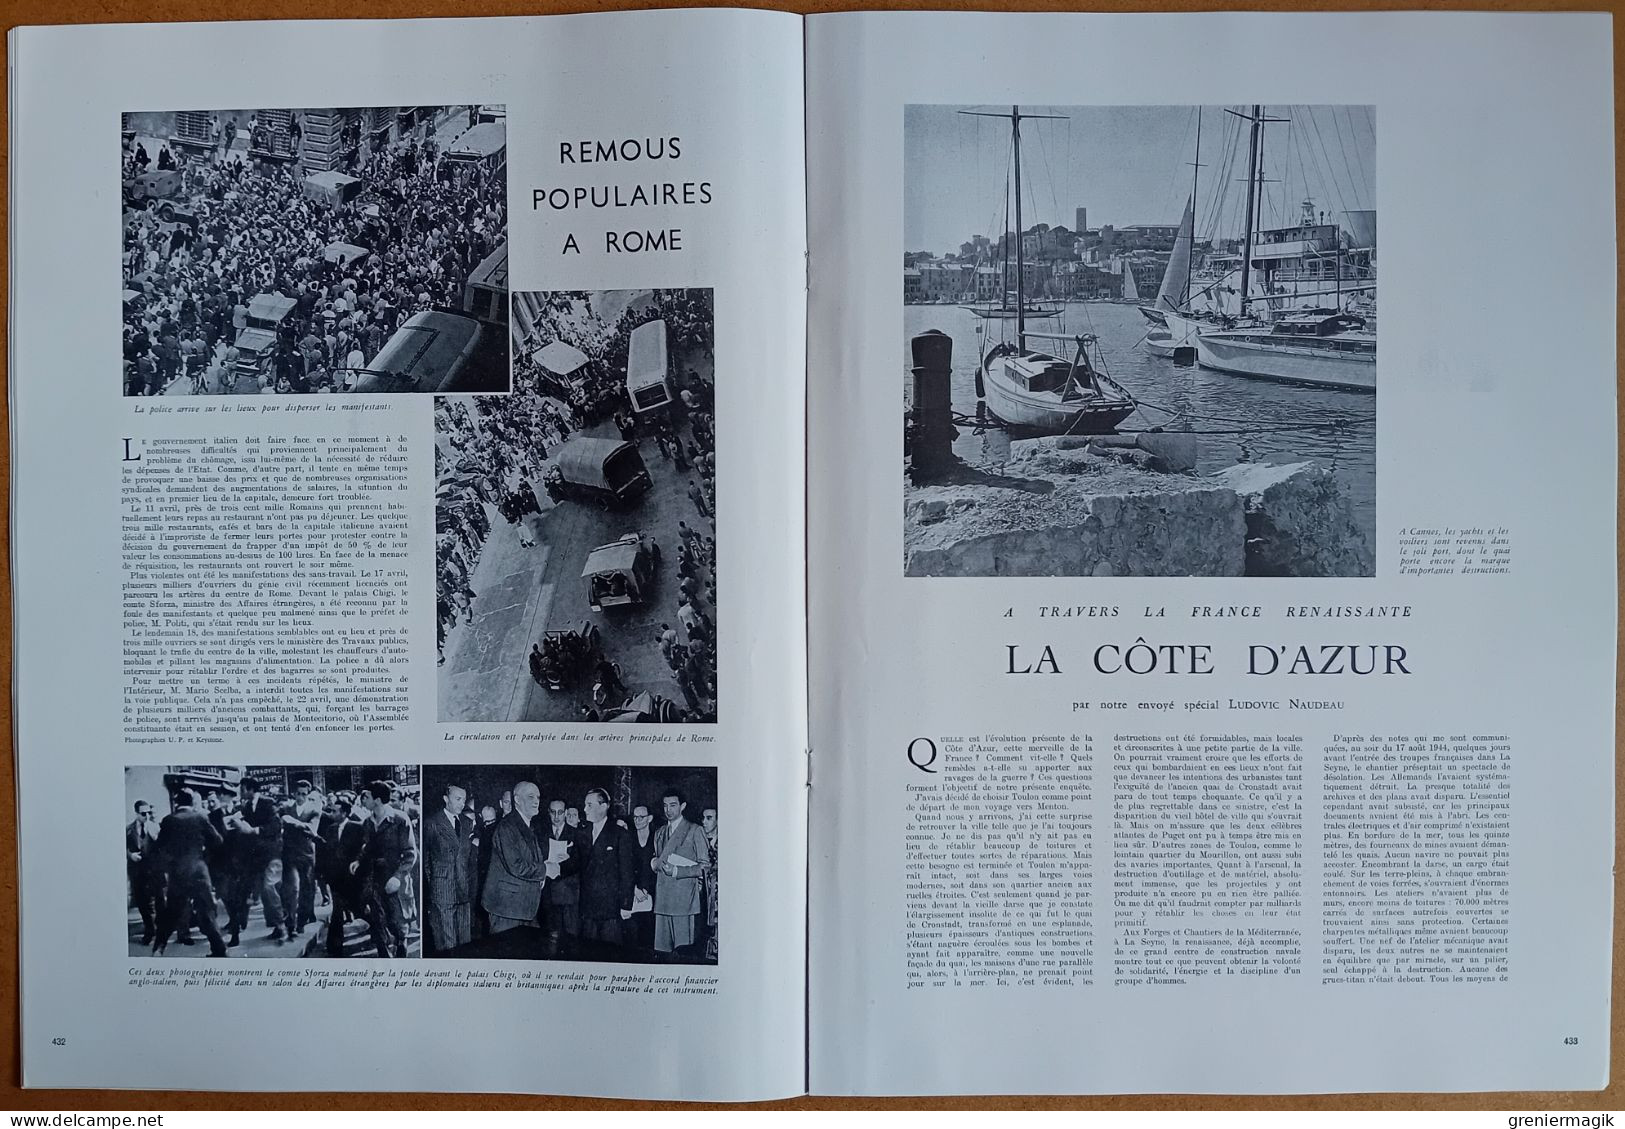 France Illustration N°83 03/05/1947 Auriol en A.O.F./De Gaulle reçoit la presse/Côte d'Azur/Le son sur film/Christian X